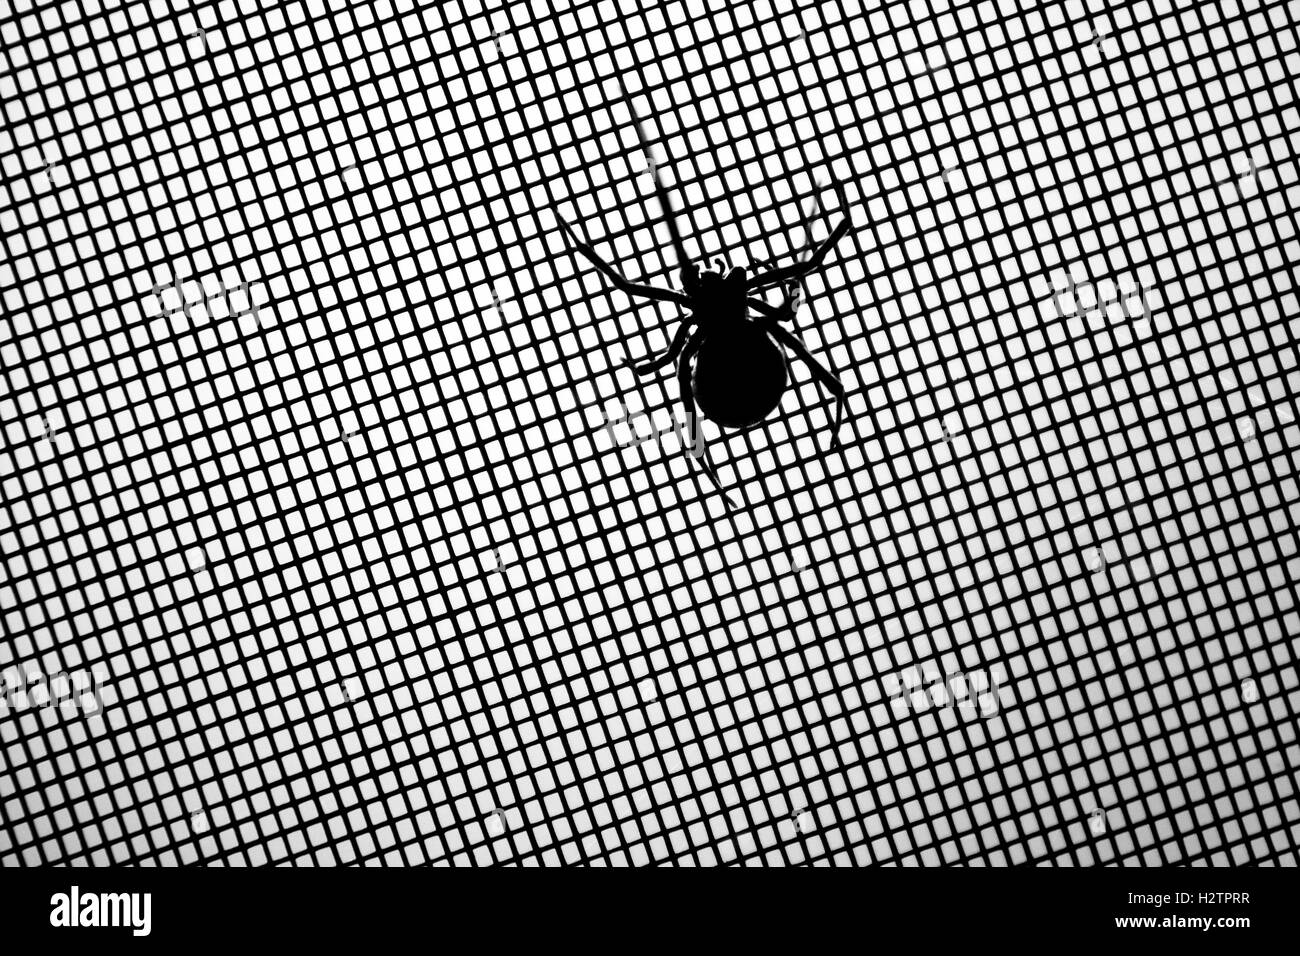 L'araignée veuve noire sur l'écran détail effrayant Banque D'Images